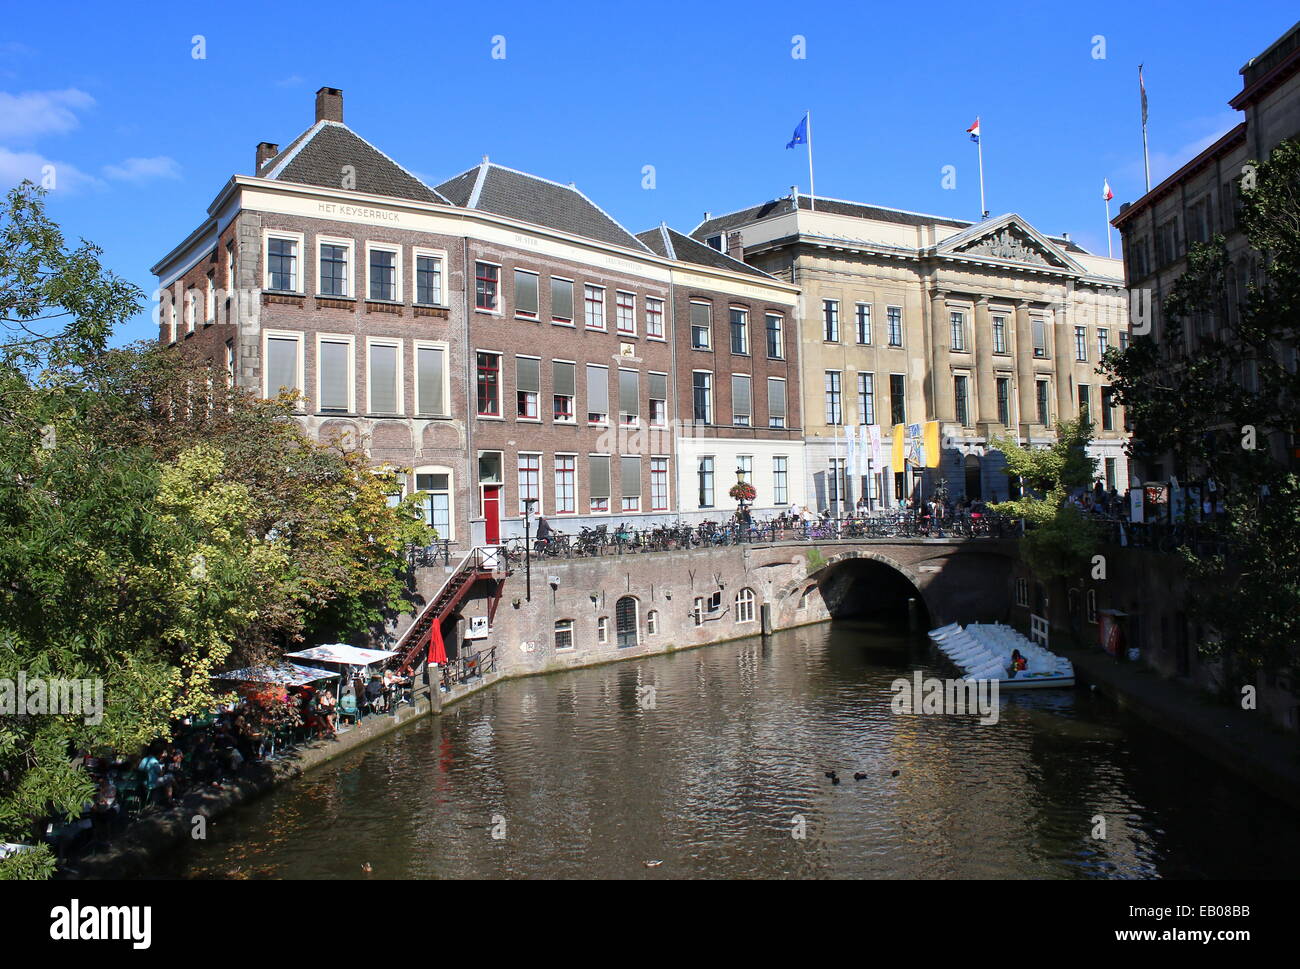 Winkel van Sinkel, Terrasse auf den alten mittelalterlichen Kais entlang Oudegracht Kanal in der Innenstadt von Utrecht, Niederlande Stockfoto